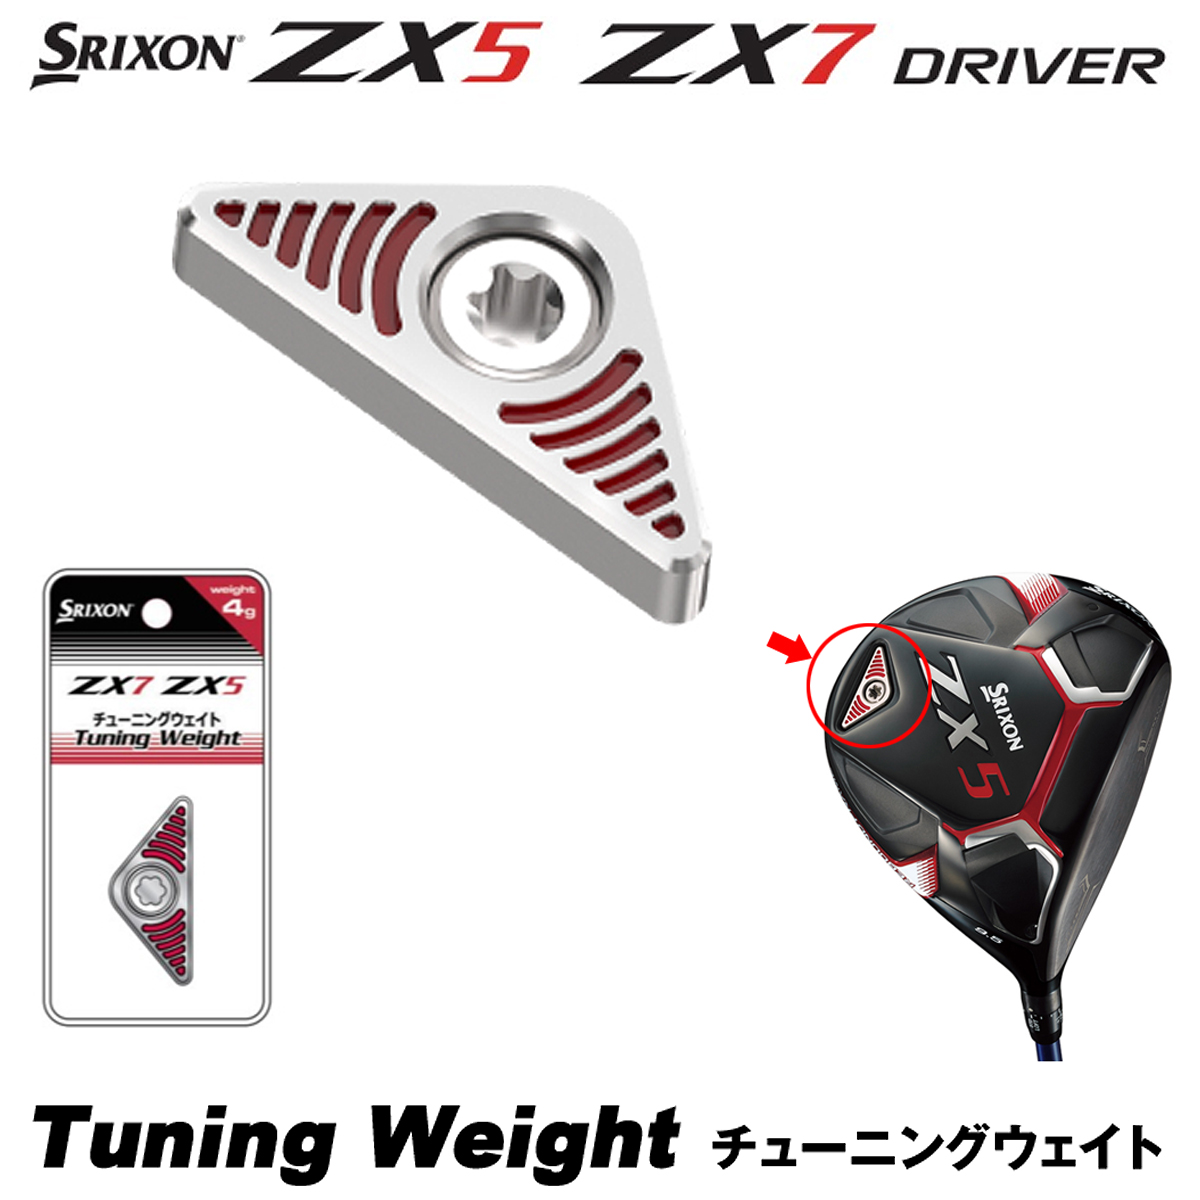 【ZX5/ZX7ドライバー専用】 DUNLOP(ダンロップ)日本正規品 SRIXON(スリクソン) カートリッジ(チューニングウエイト) 「ZX WEIGHT」 【あす楽対応】